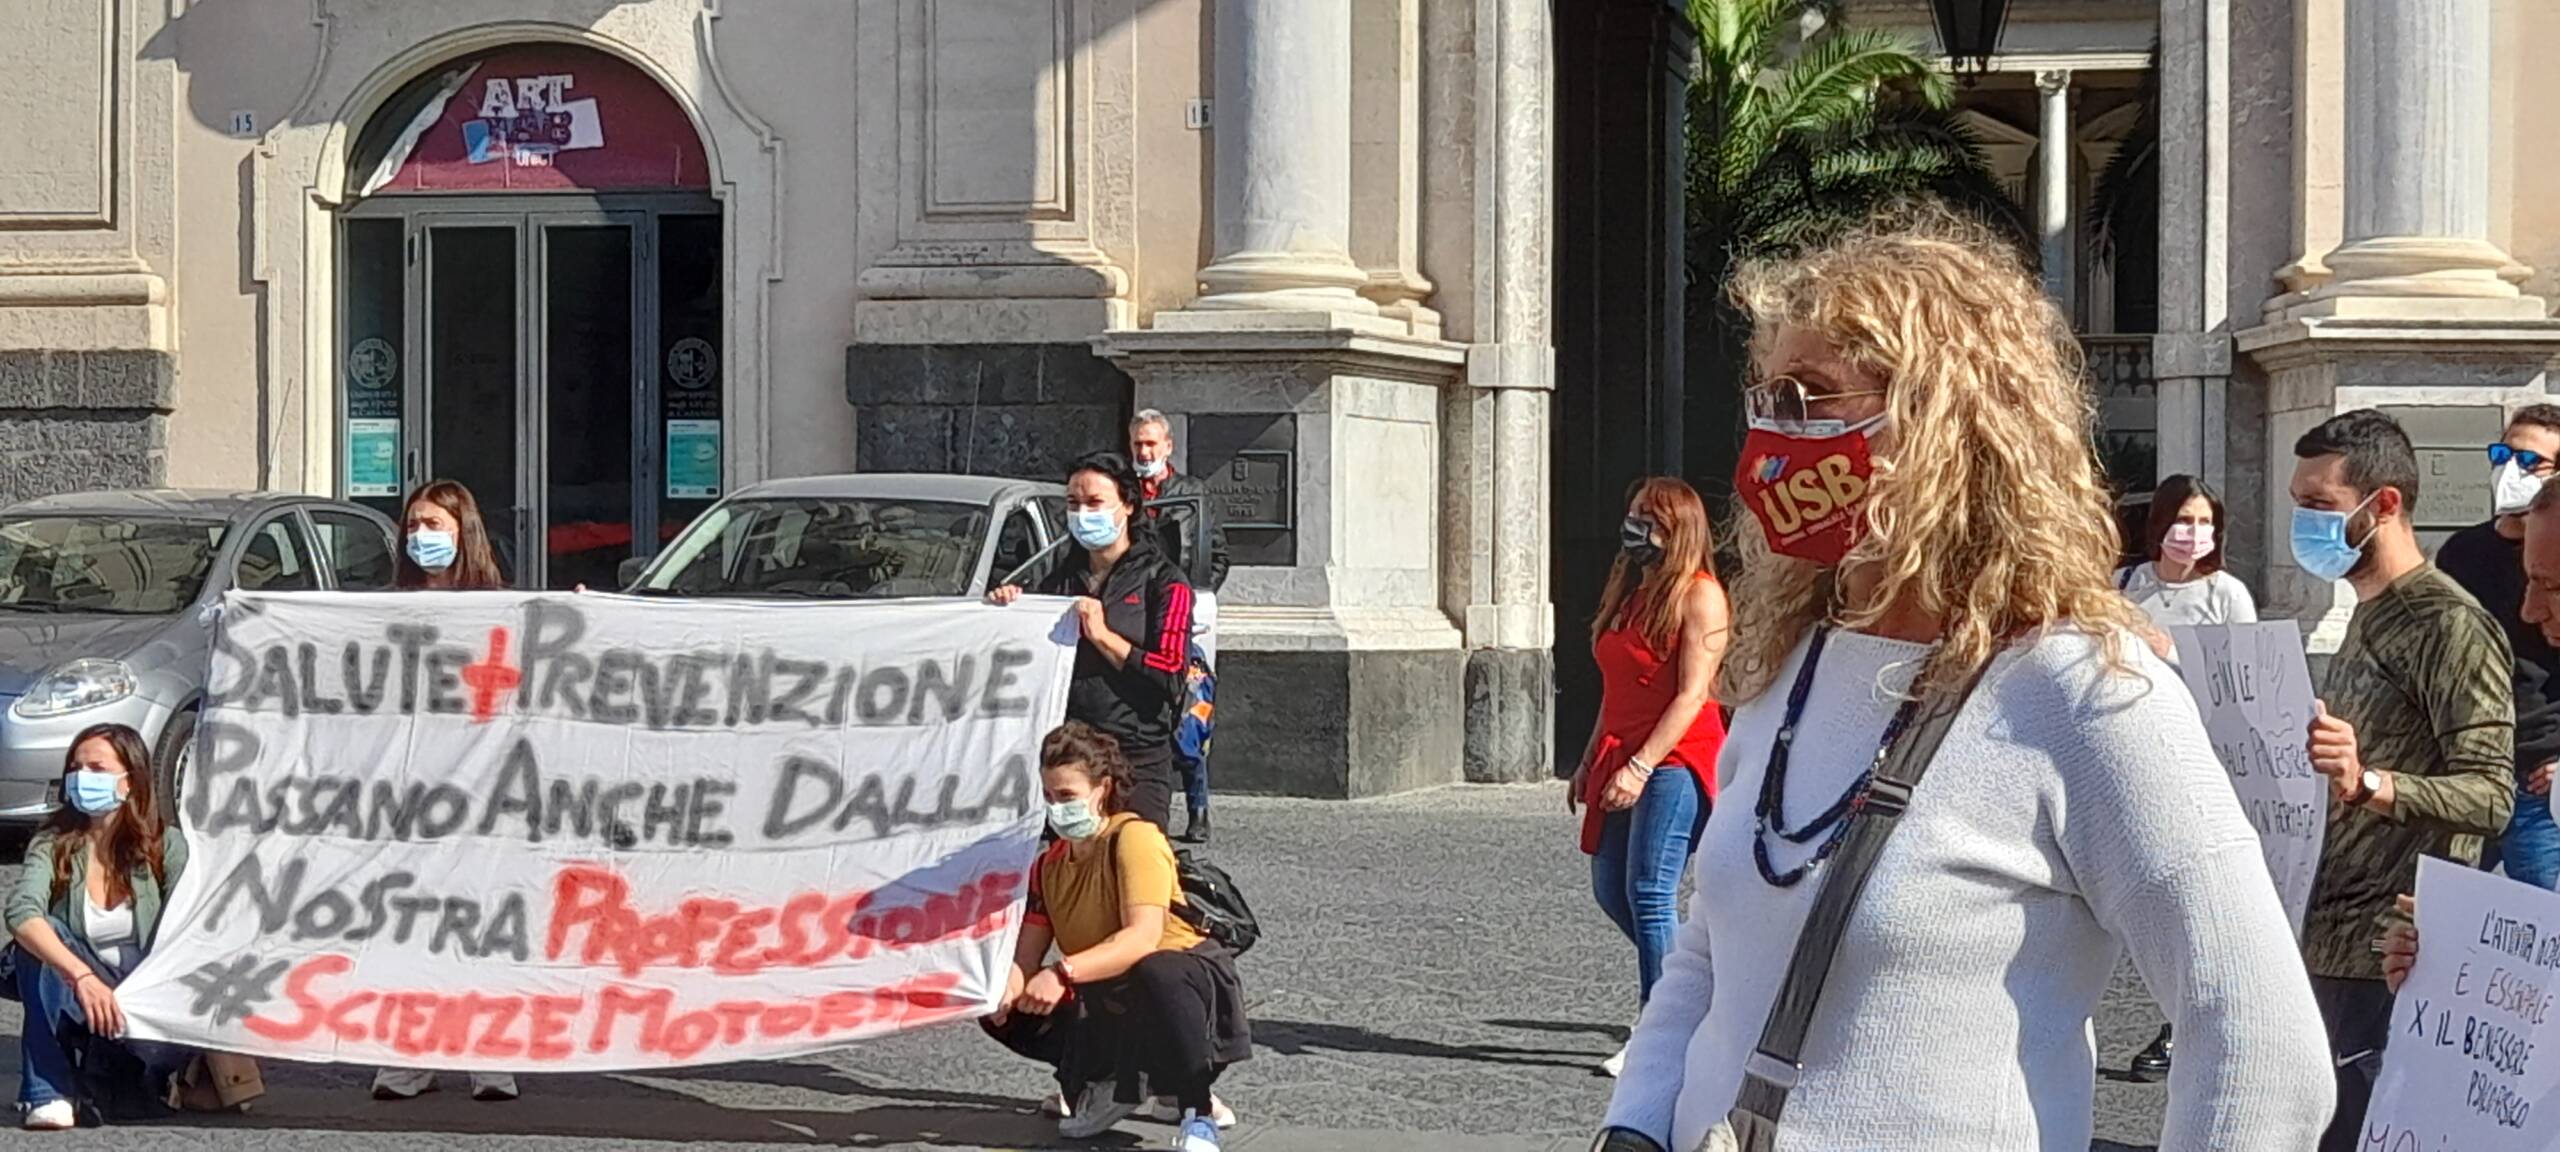 Palestre chiuse, a Catania la protesta del Comitato Italiano Scienze Motorie: “Il Governo dia i soldi”